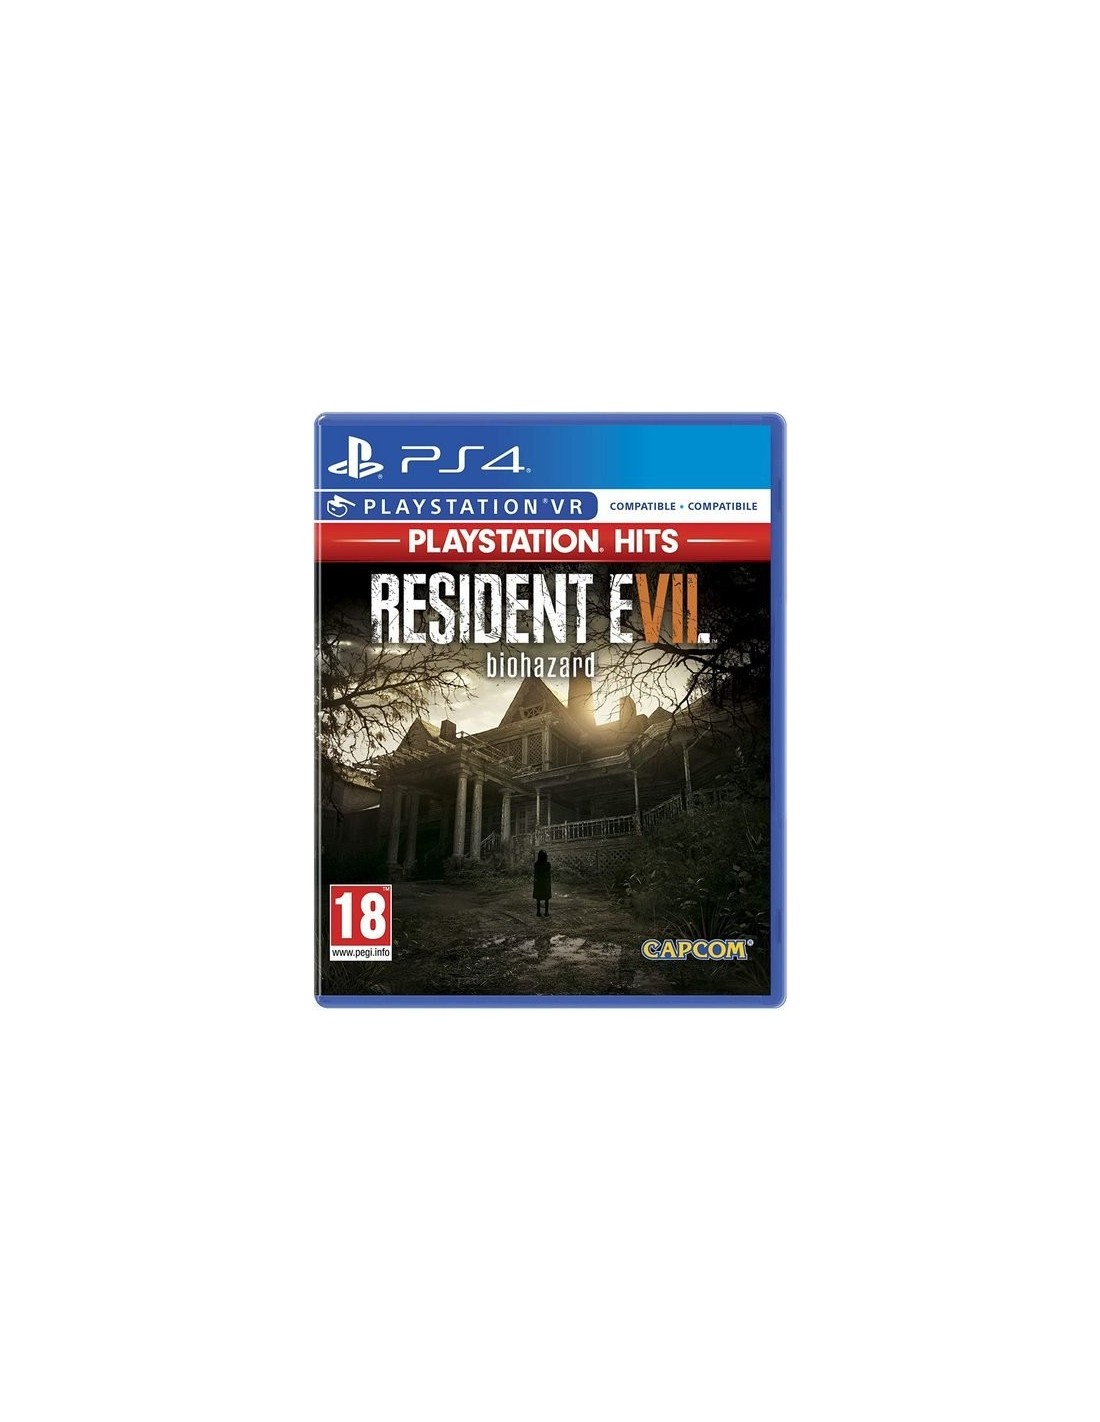 Capcom Resident Evil 7, PS4 PlayStation Italiano Inglés, PlayStation Hits 4